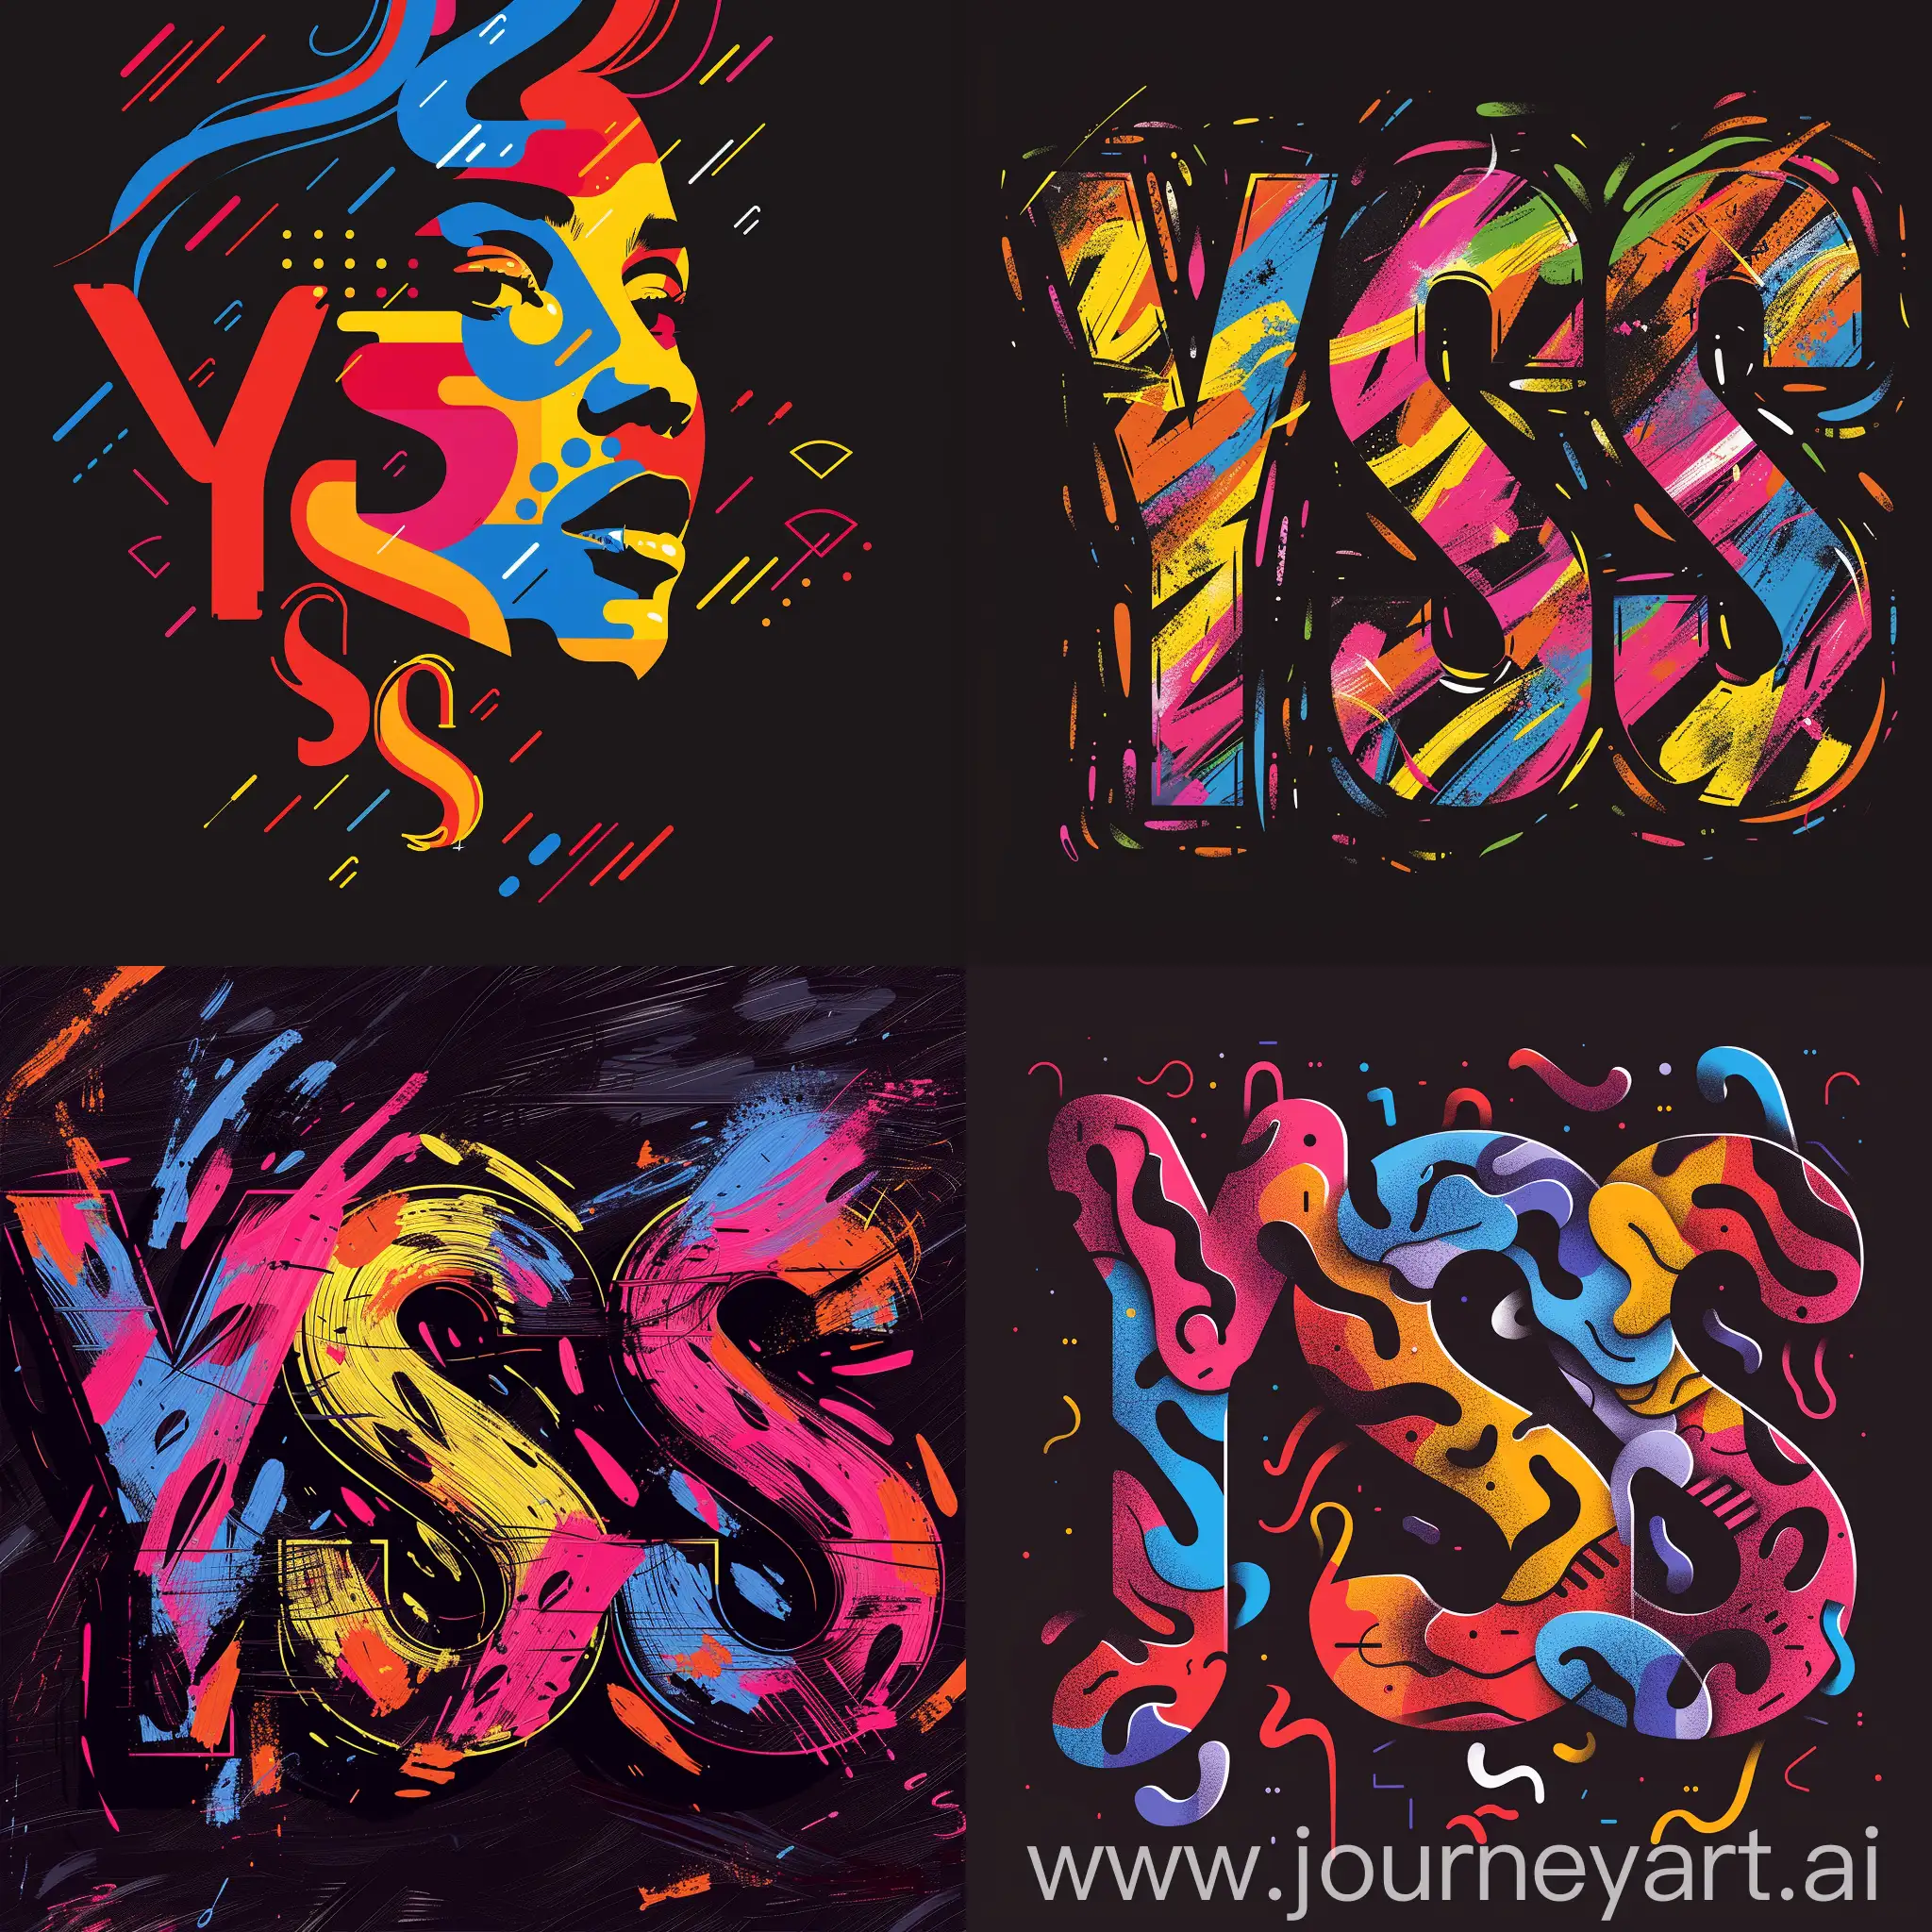 буквы "YSS" сливаются в узор, который ассоциируется с изображением грустной сестры, абстрактный логотип с контрастом черного и ярких цветов, --s 400